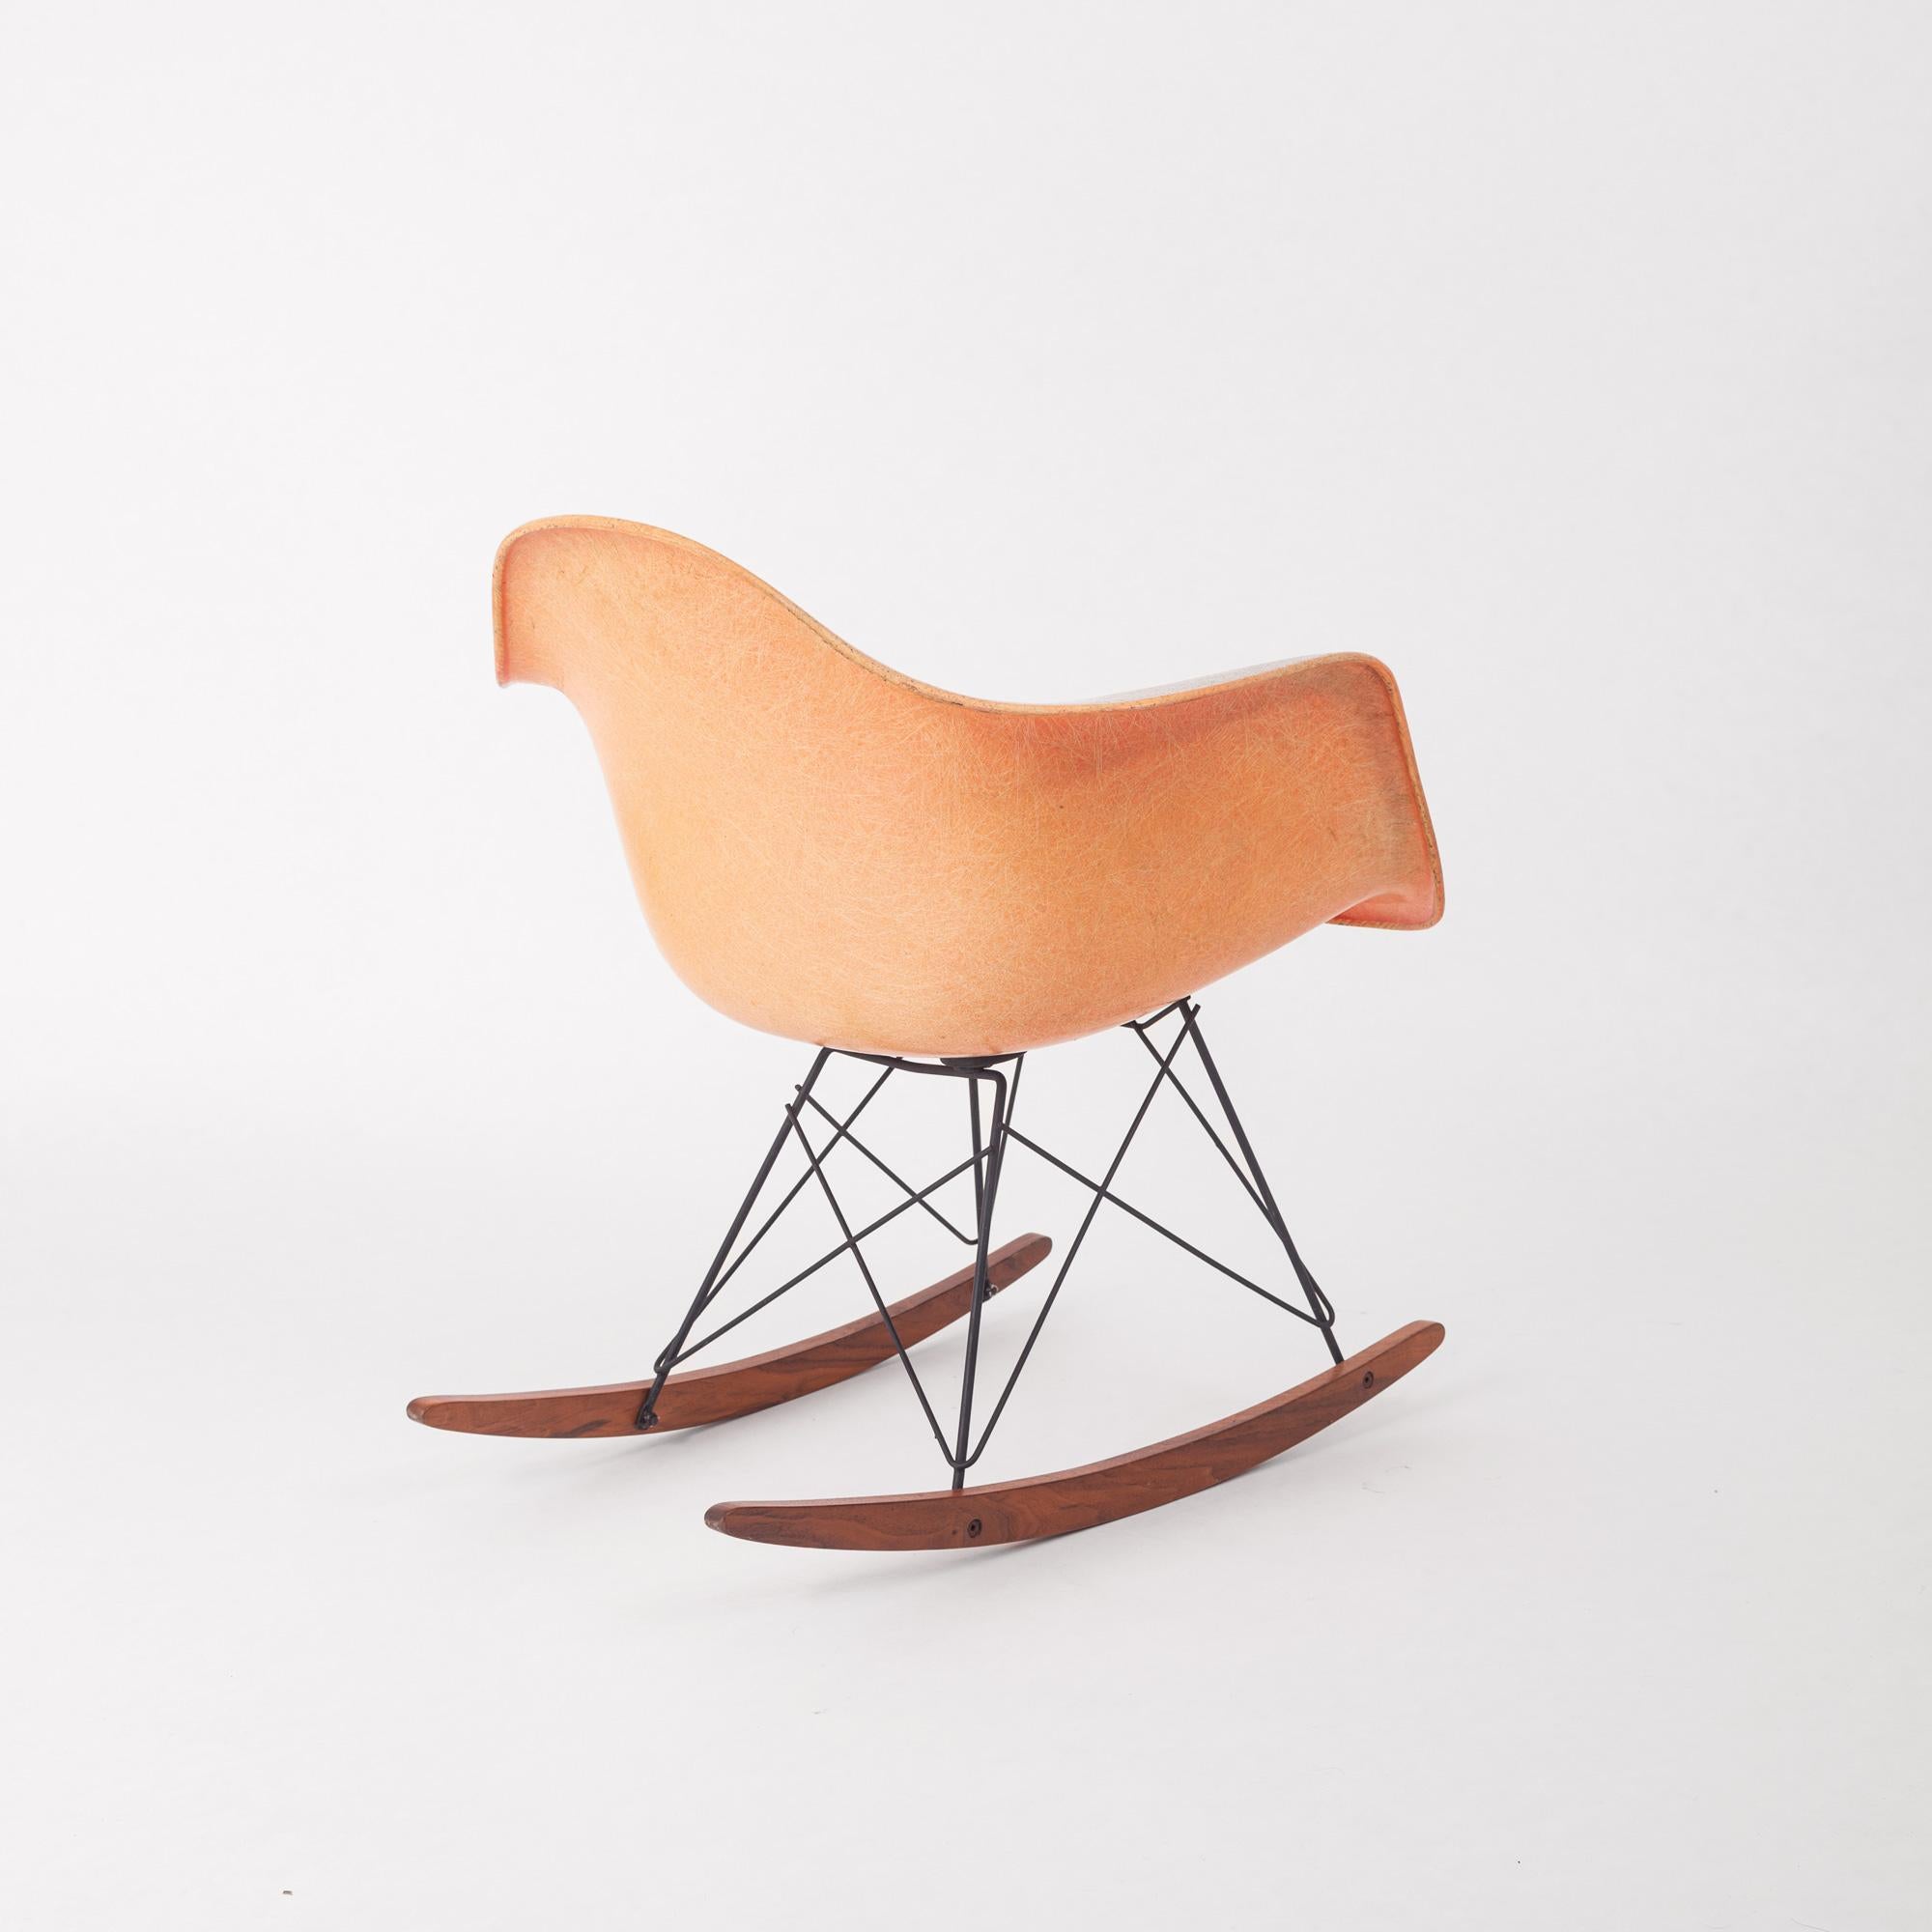 Connue sous le nom de chaise à bascule RAR conçue par Charles & Ray Eames, cette chaise porte l'étiquette à carreaux Zenith et est la première génération produite dans l'usine de plastique Zenith à Gardena, en Californie, entre 1950 et 1953. Cette